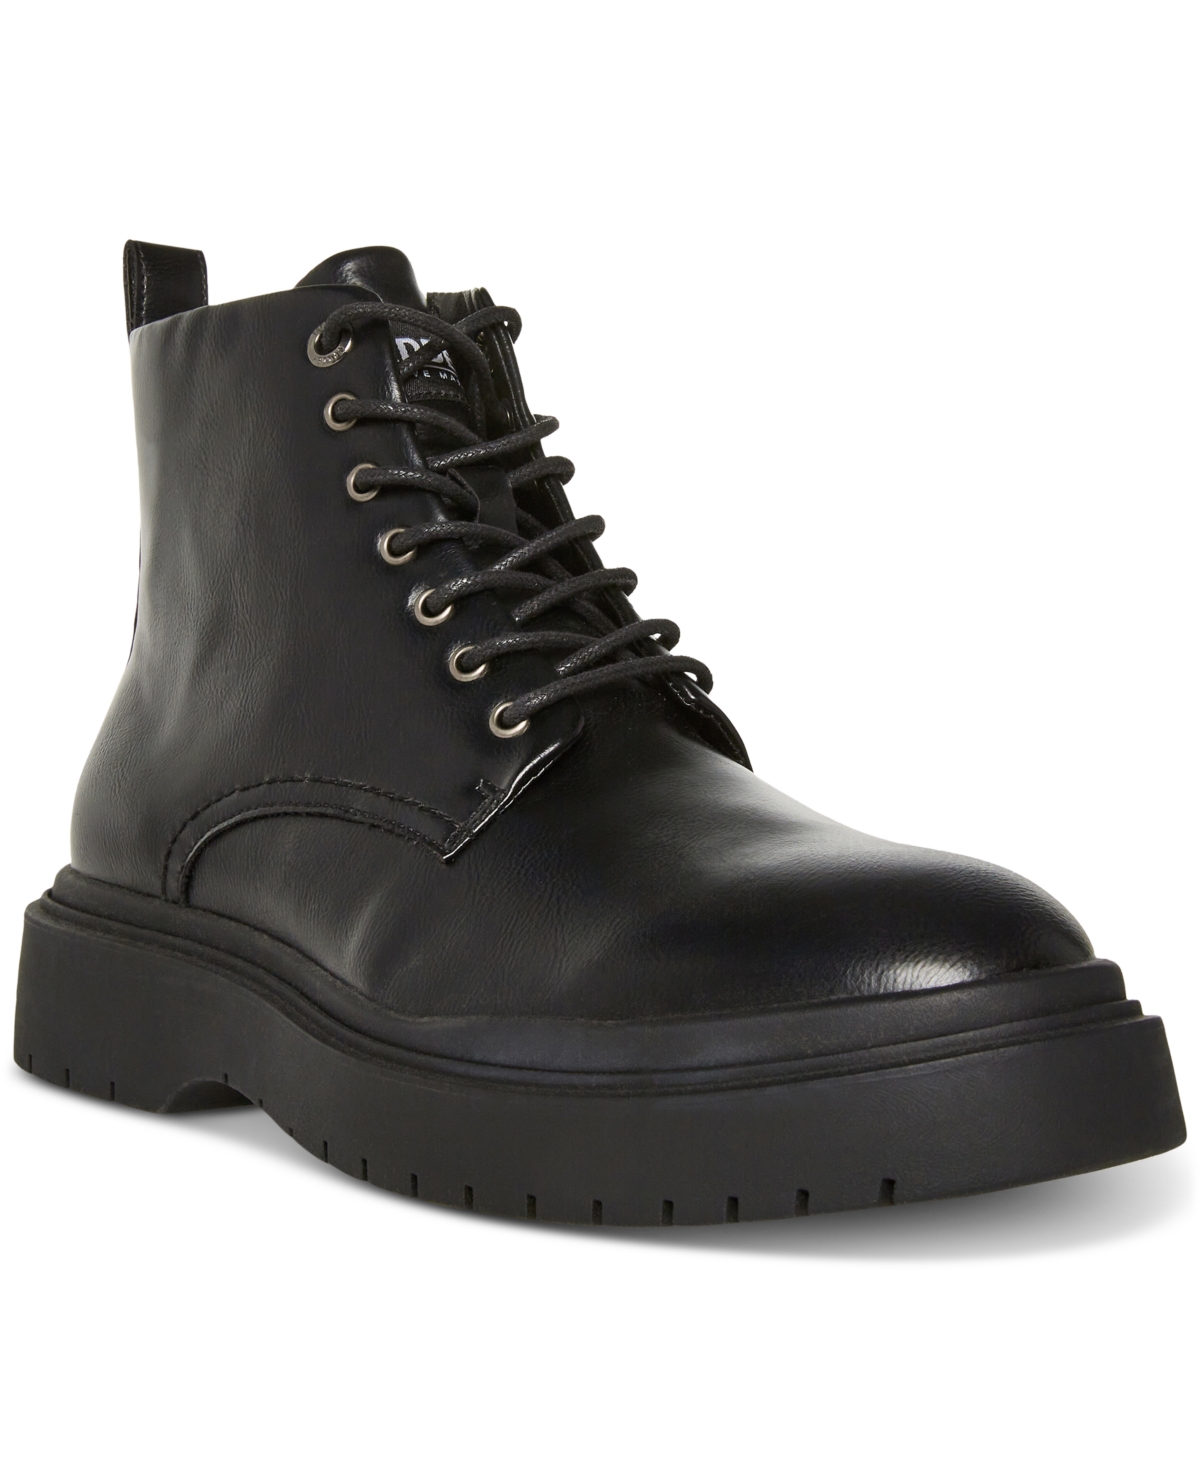 Men's Faux Leather Auustn Combat Style Boot - Black